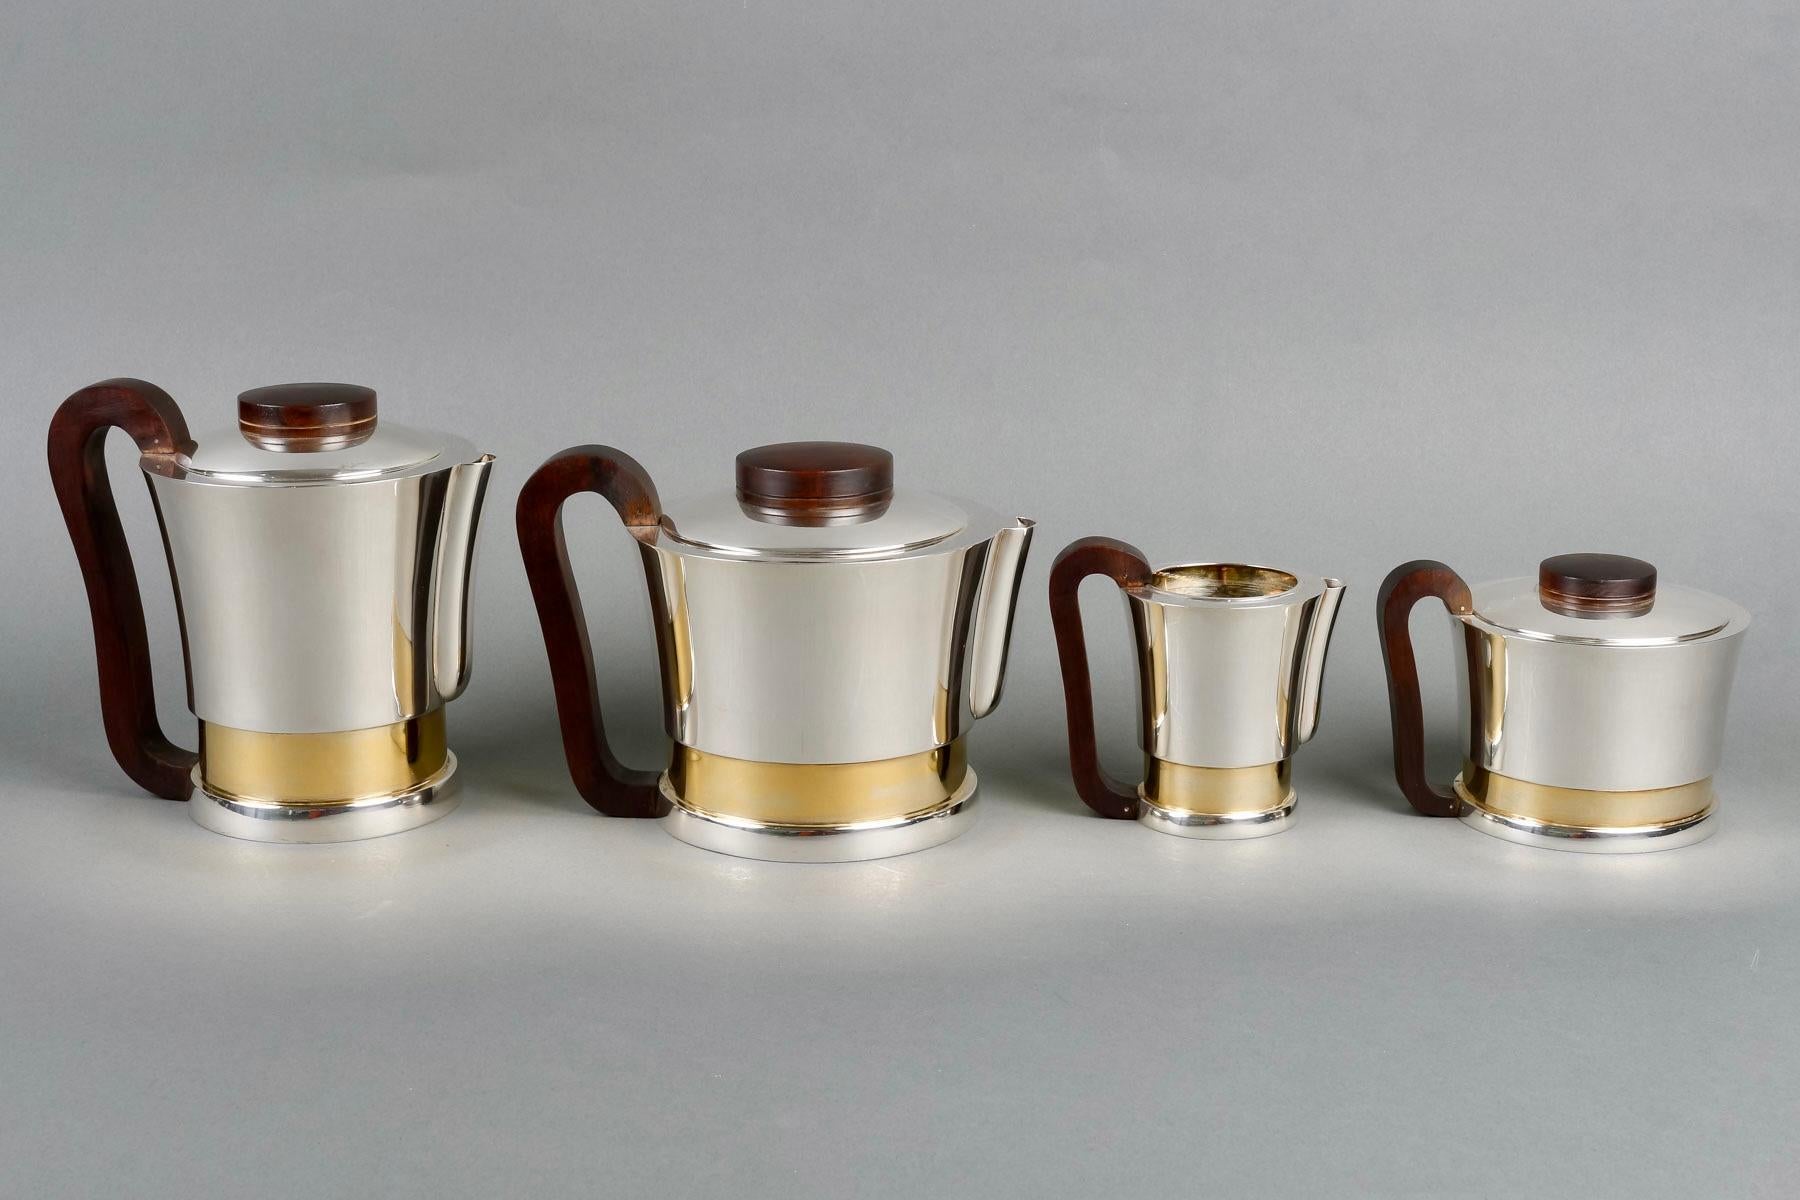 Modernes Art Deco Tee- und Kaffeeservice aus reinem Sterlingsilber, Vermeil und Palisanderholz von Jean E. Puiforcat aus den 1930er Jahren.

Dienst einschließlich:
- eine Kaffeekanne 
- eine Teekanne
- eine Milchkanne
- einen Zuckertopf

Minerve